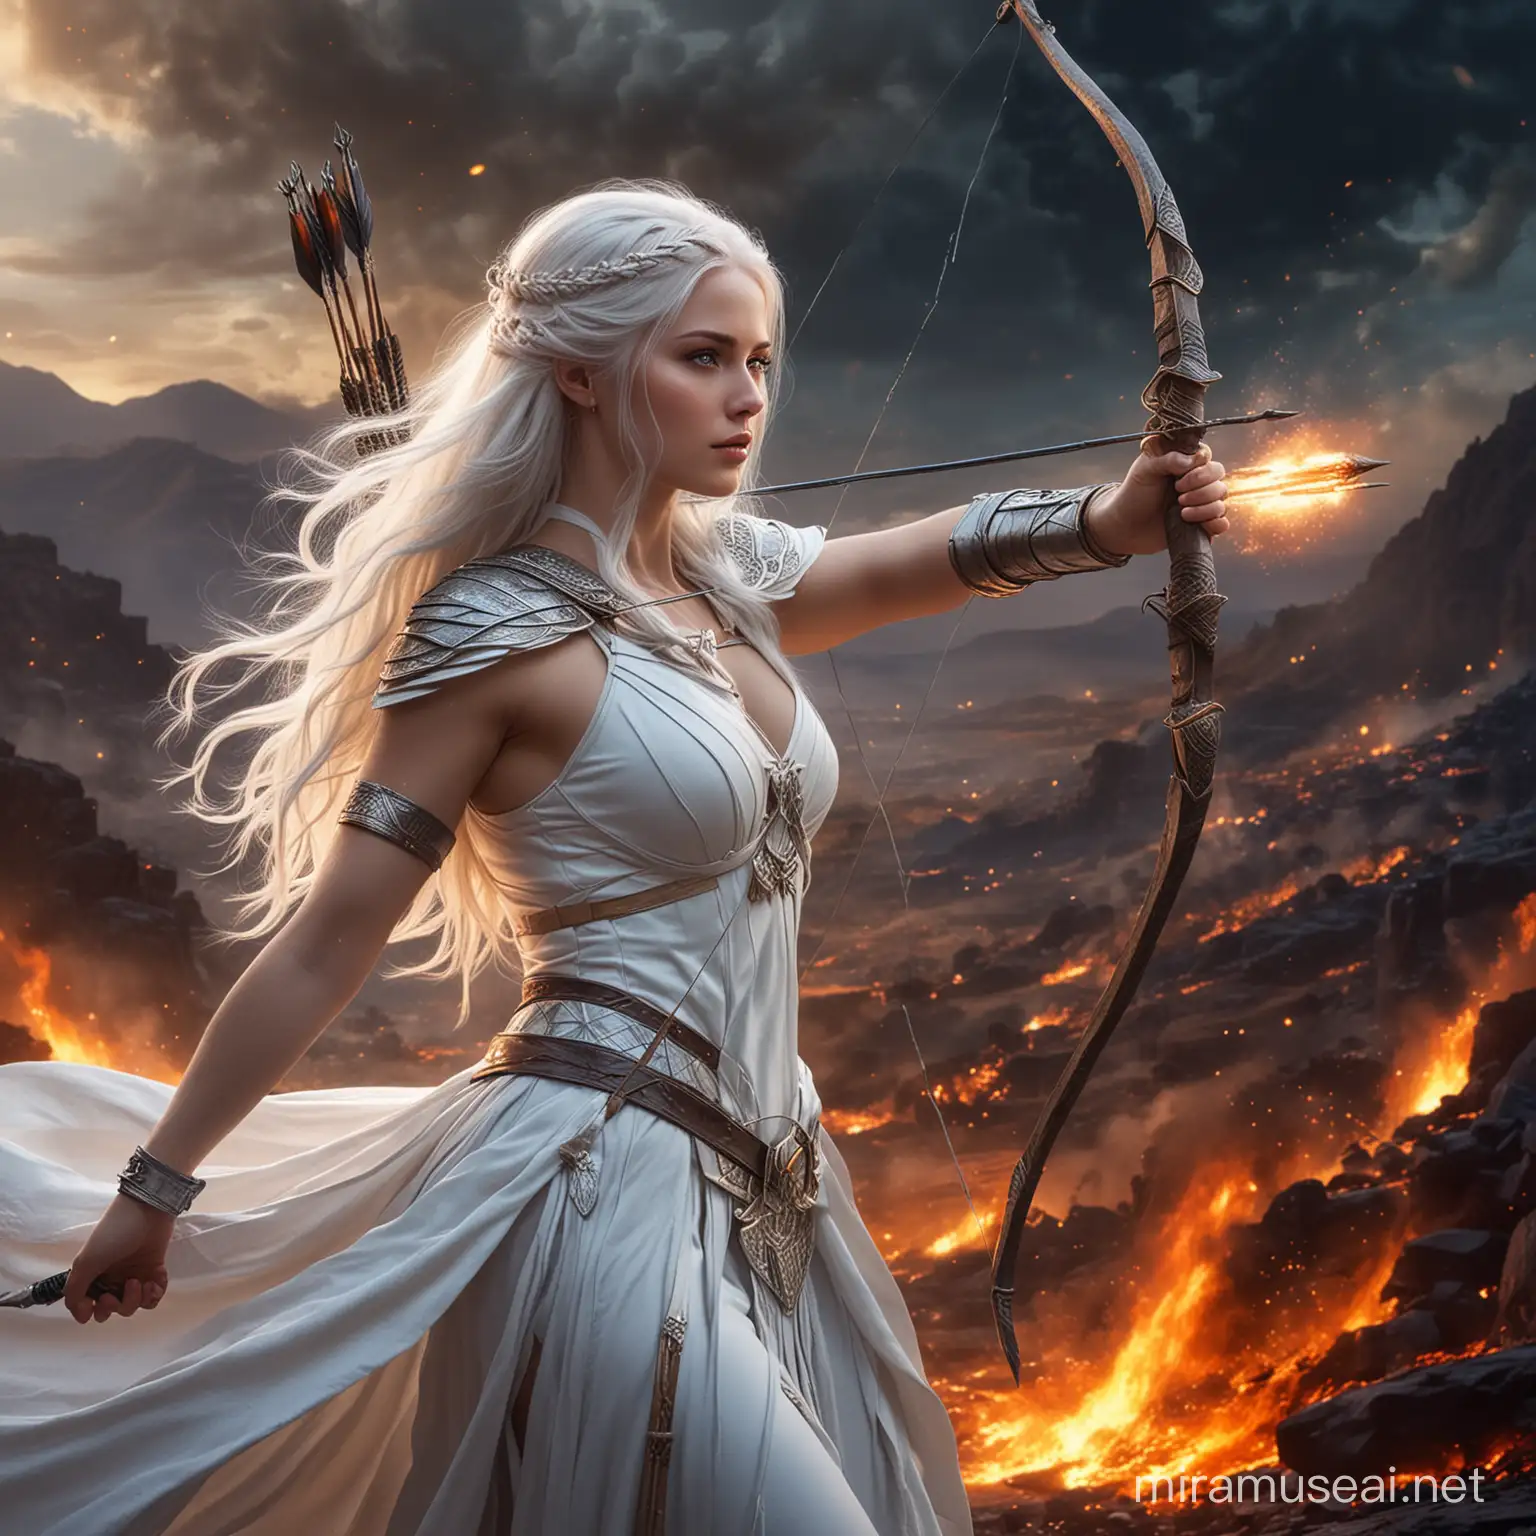 Diosa emperatriz hermosa joven de cabellos blancos largos y ojos azules vestida de blanco 
de  generala emperatriz ,con un arco y flecha y rodeada de fuego poder y energía cósmica, y de fondo un valle  tenebroso 